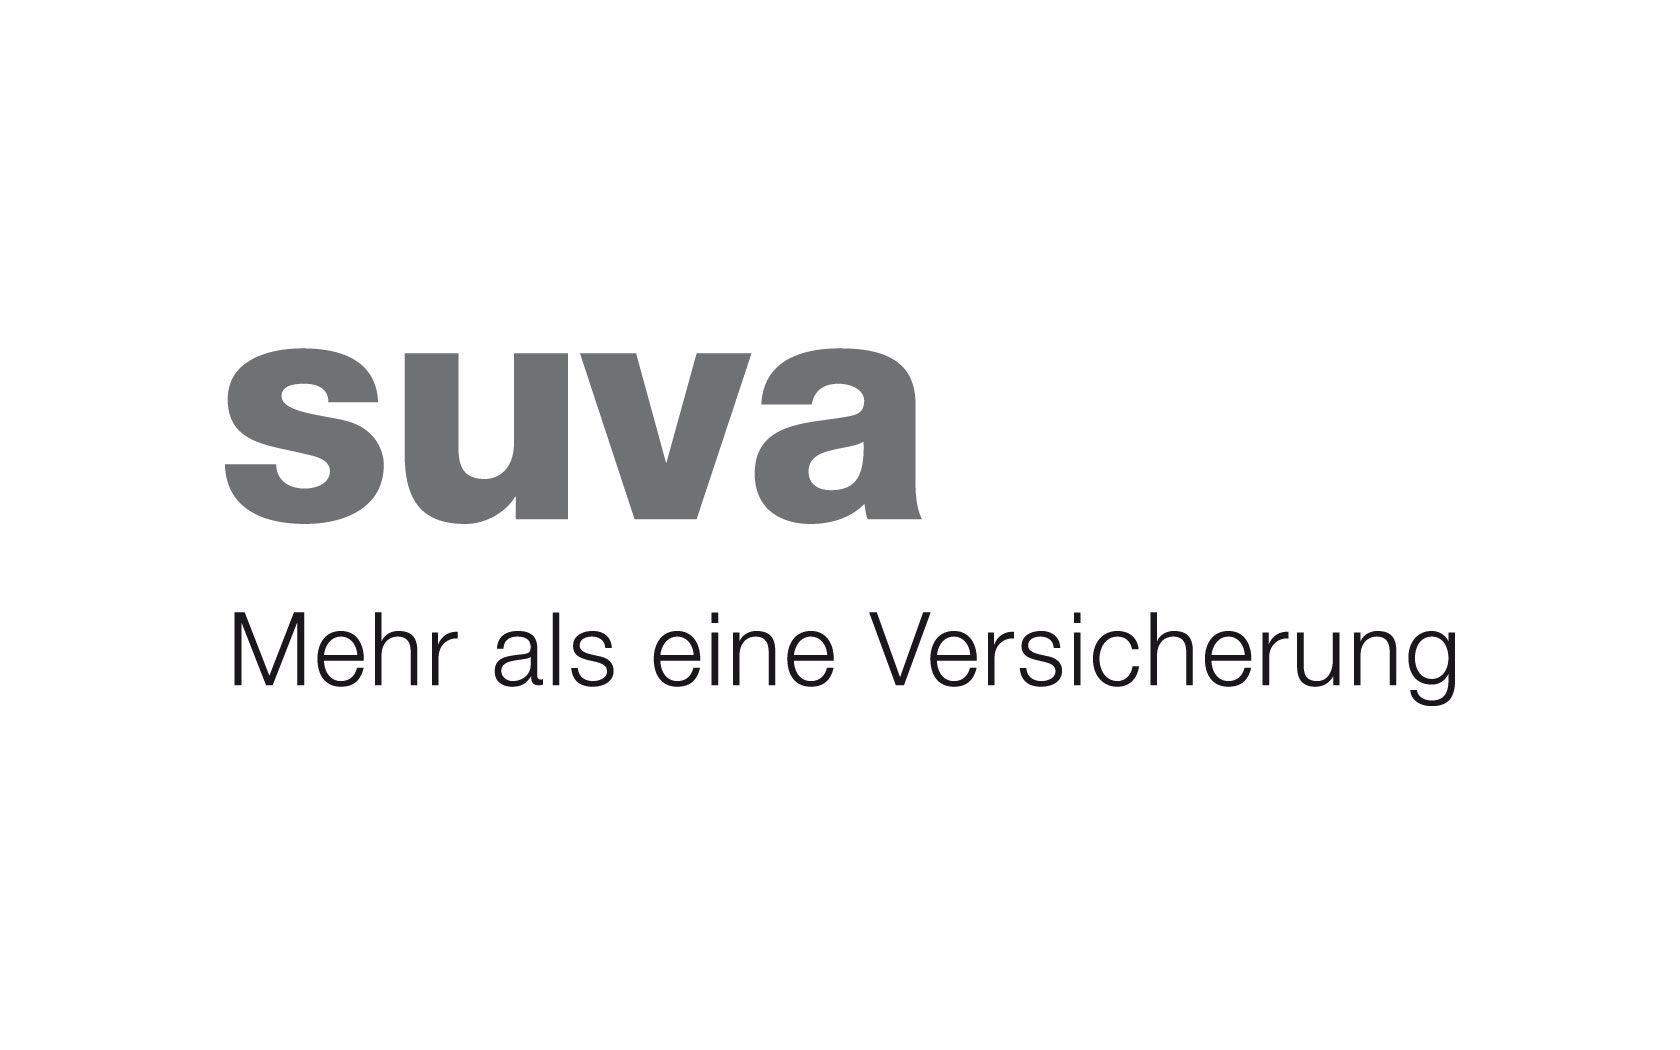 Swiss Insurance Company Logo - Suva